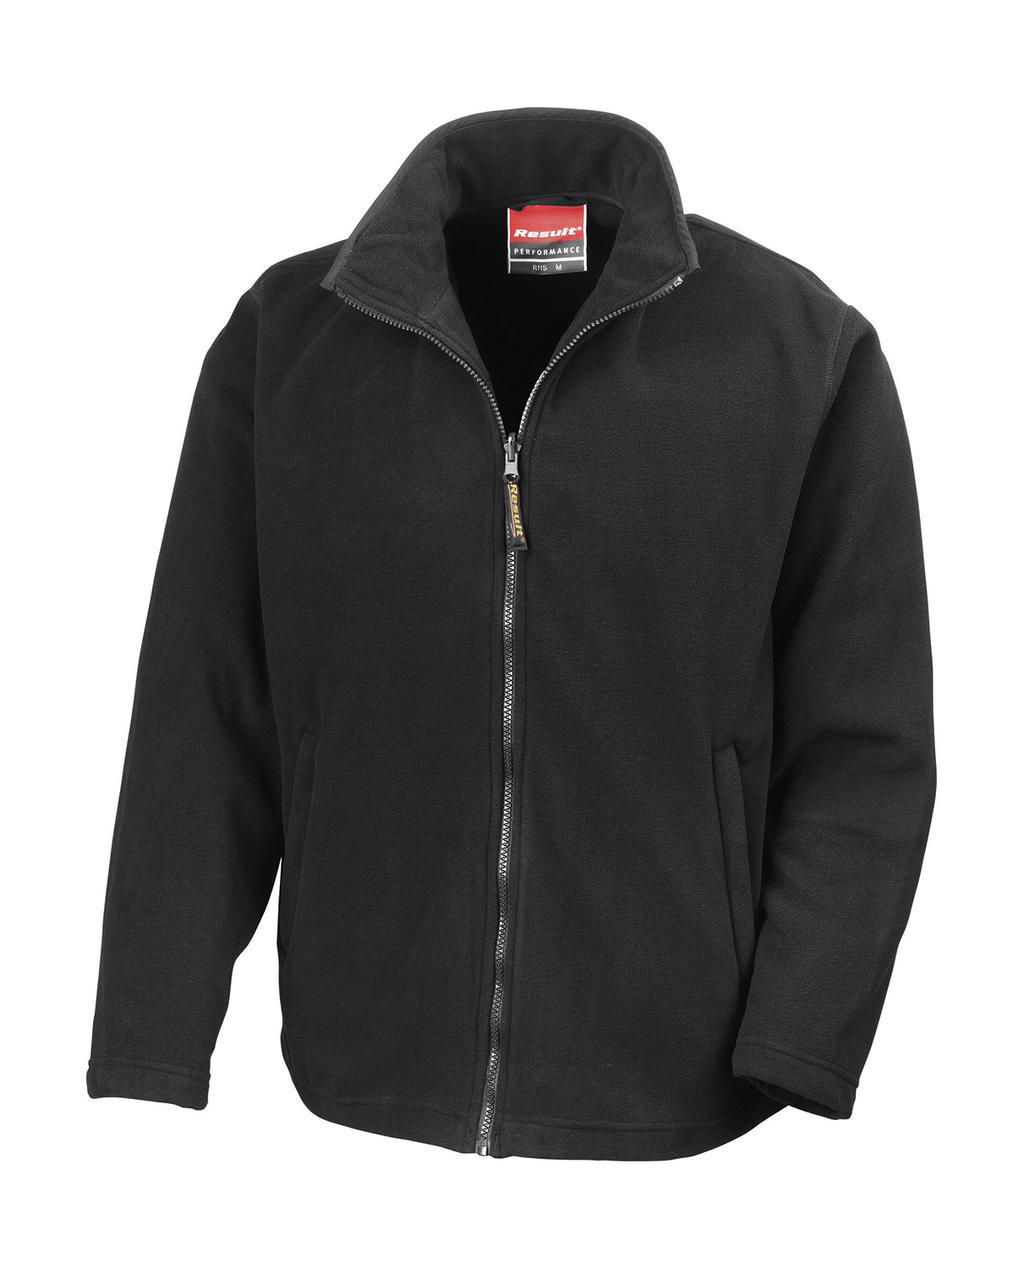  Horizon High Grade Microfleece Jacket in Farbe Black